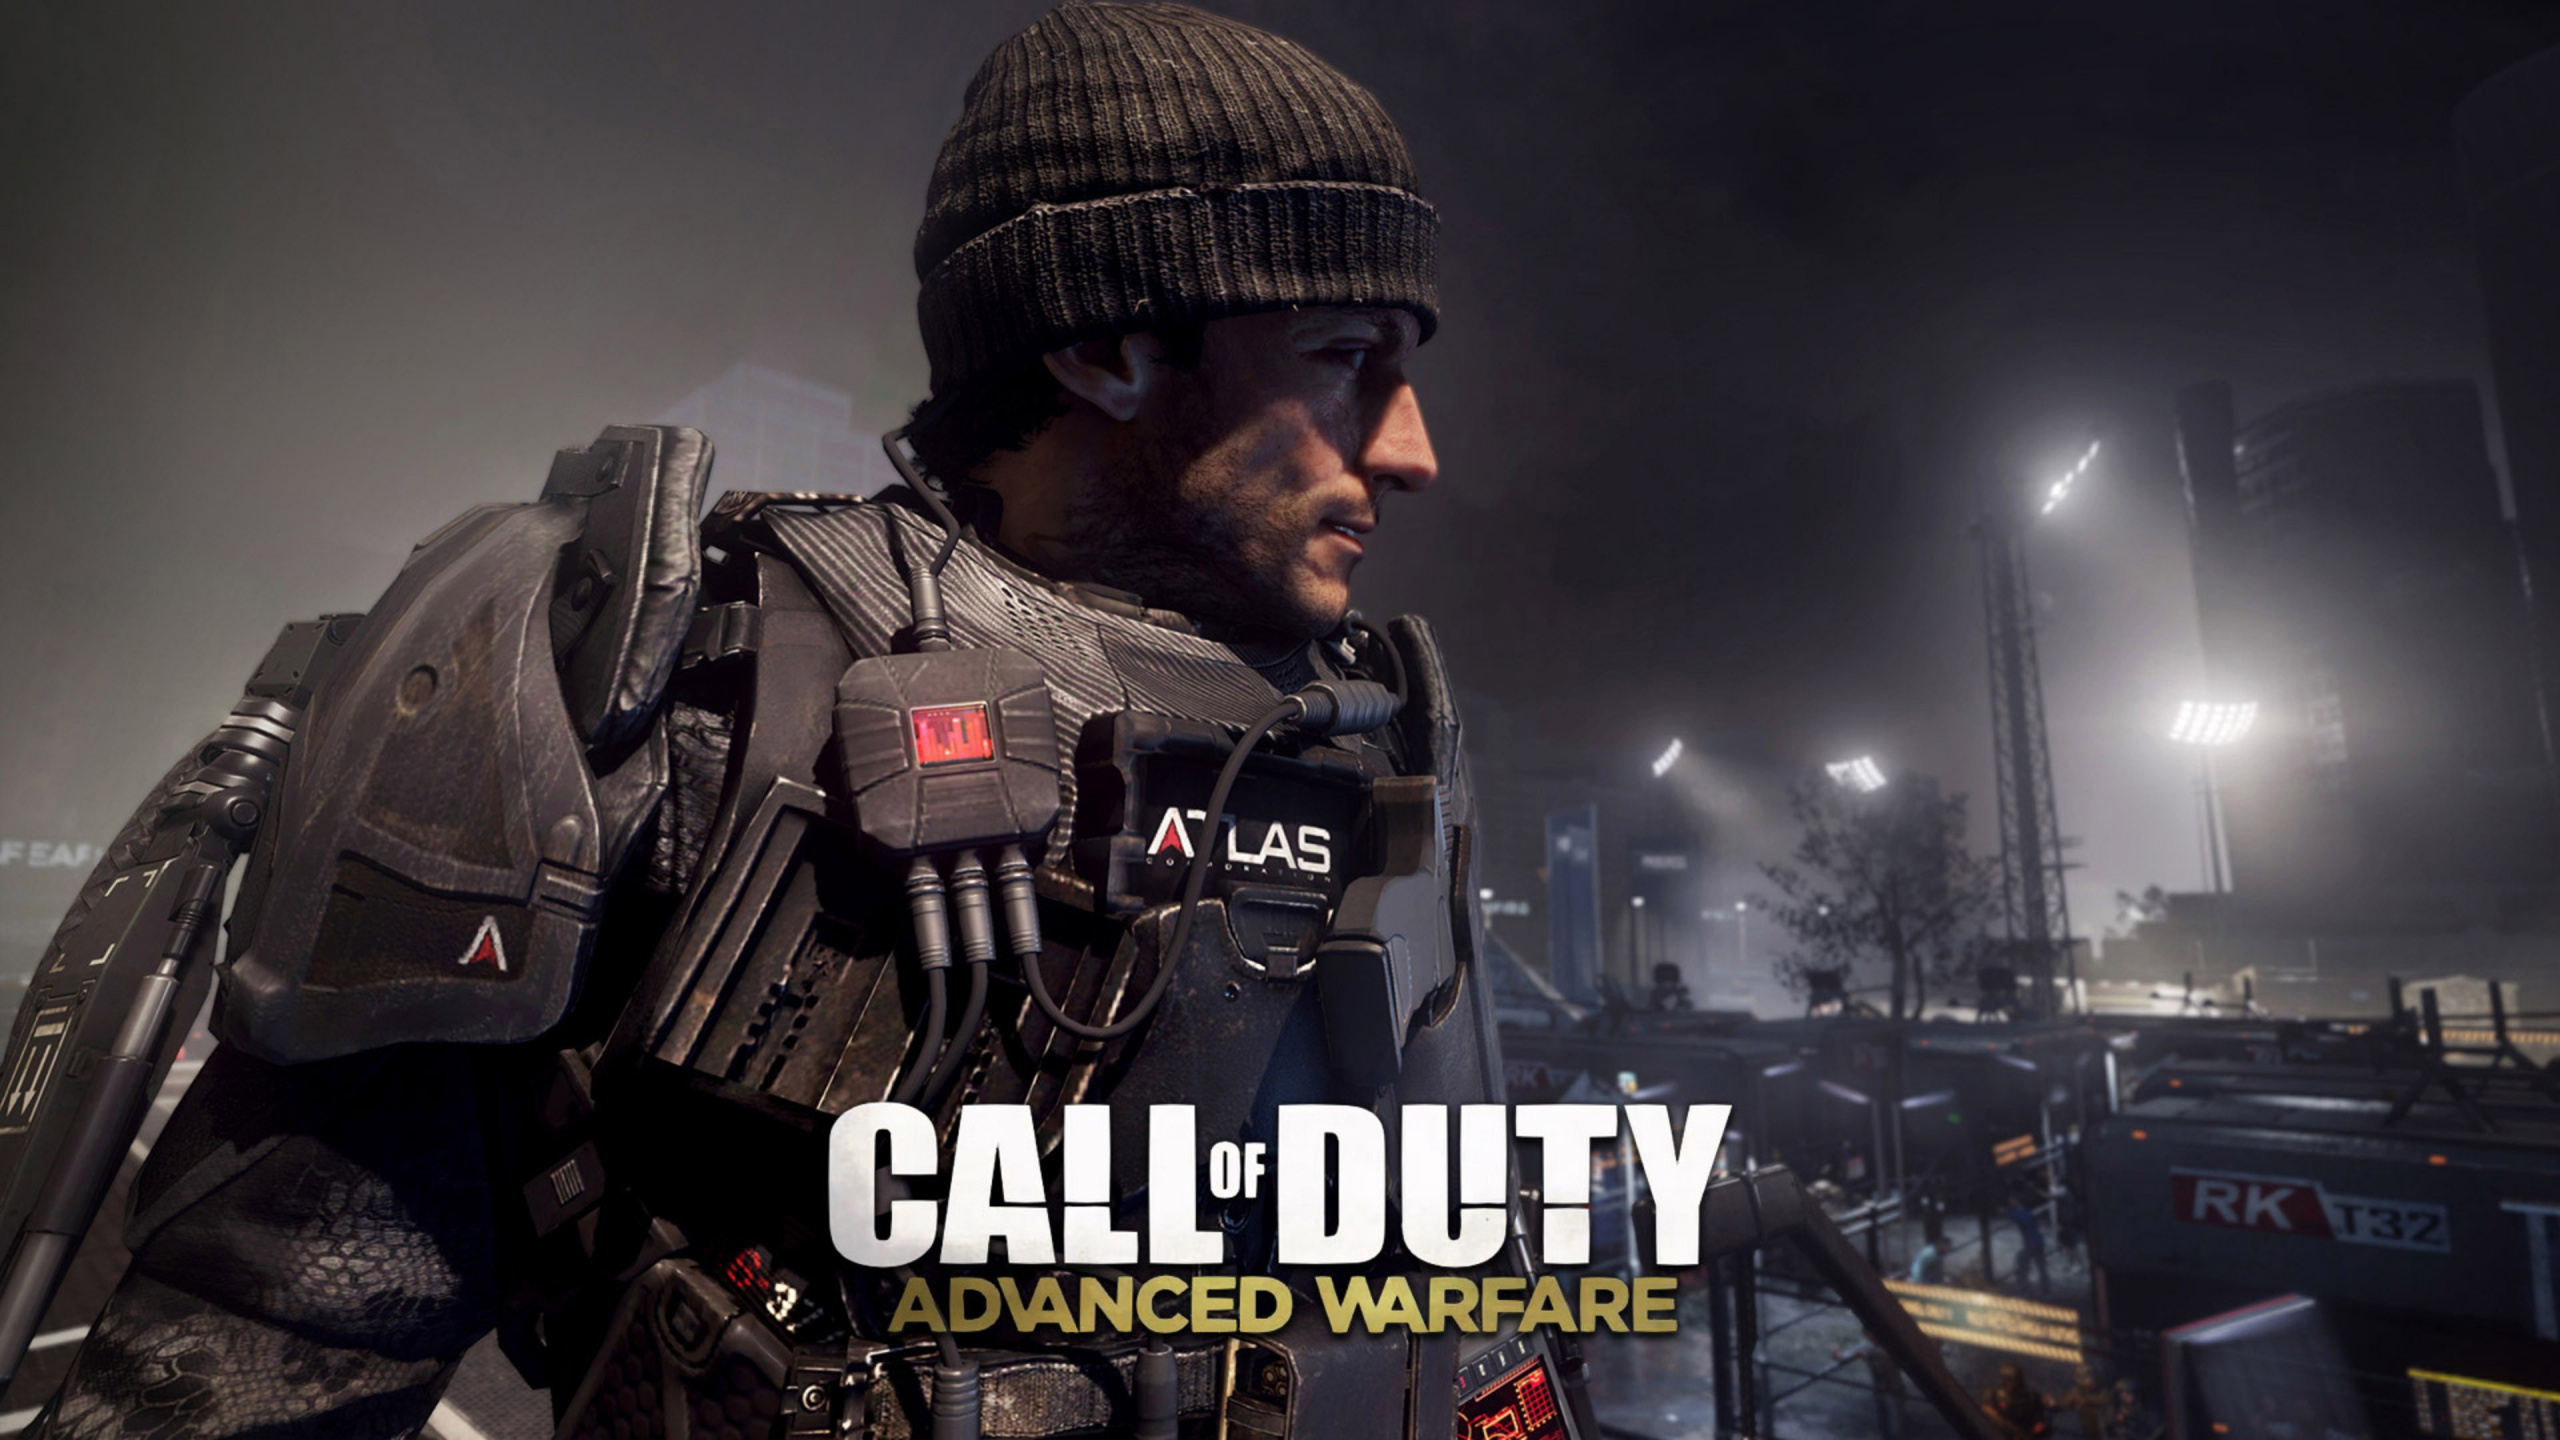 Call of Duty Advanced Warfare, Sledgehammer Games, Multijugador Juego de Video, Juego de Pc, Soldado. Wallpaper in 2560x1440 Resolution